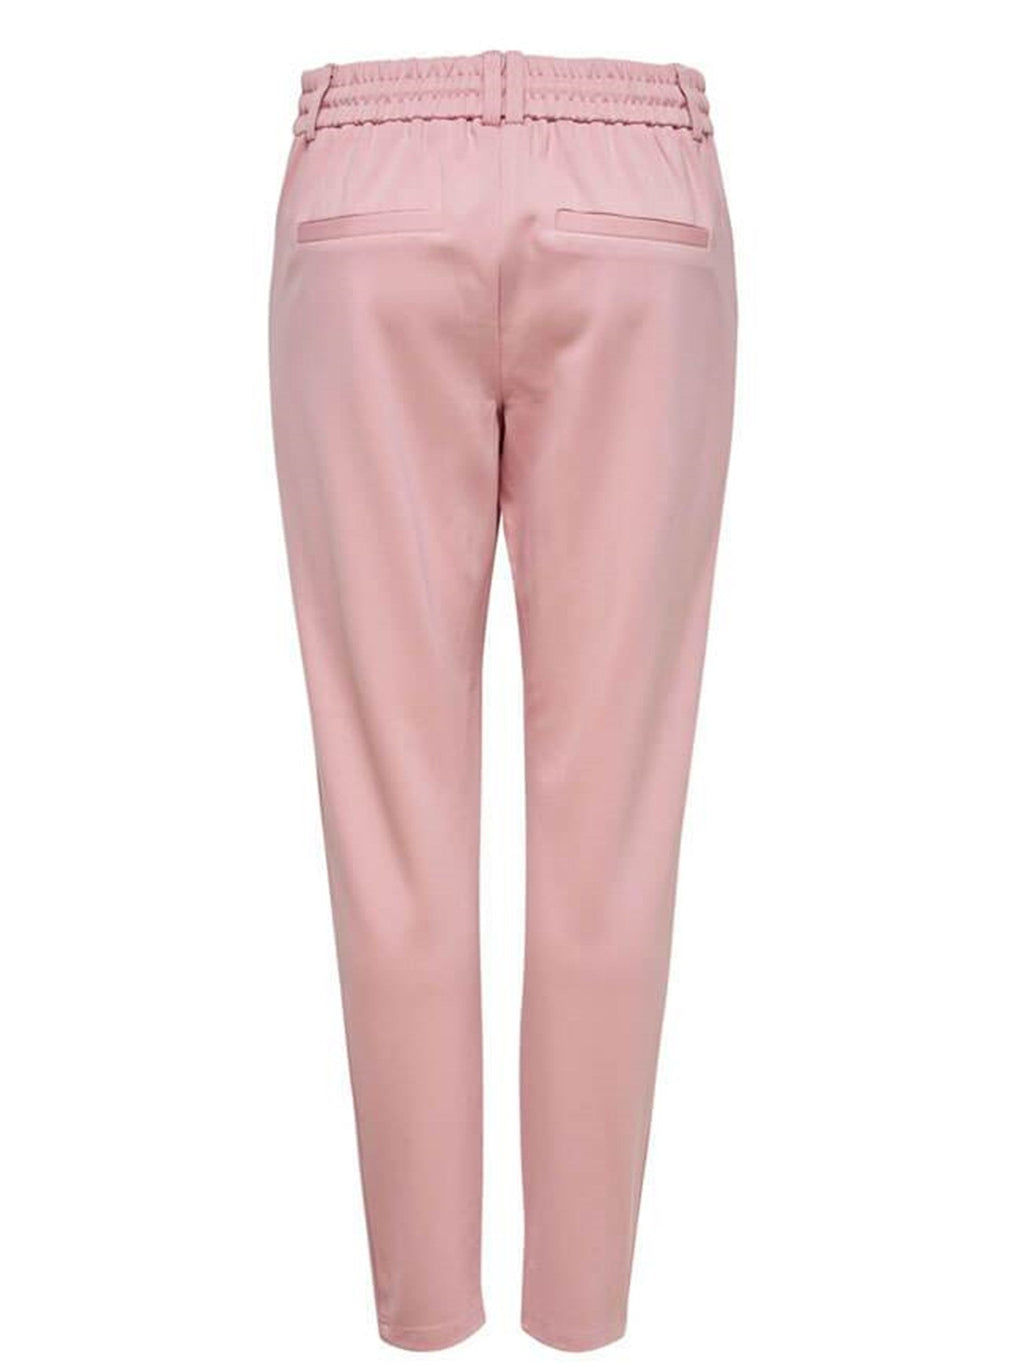 Poptrash hlače - ružičaste